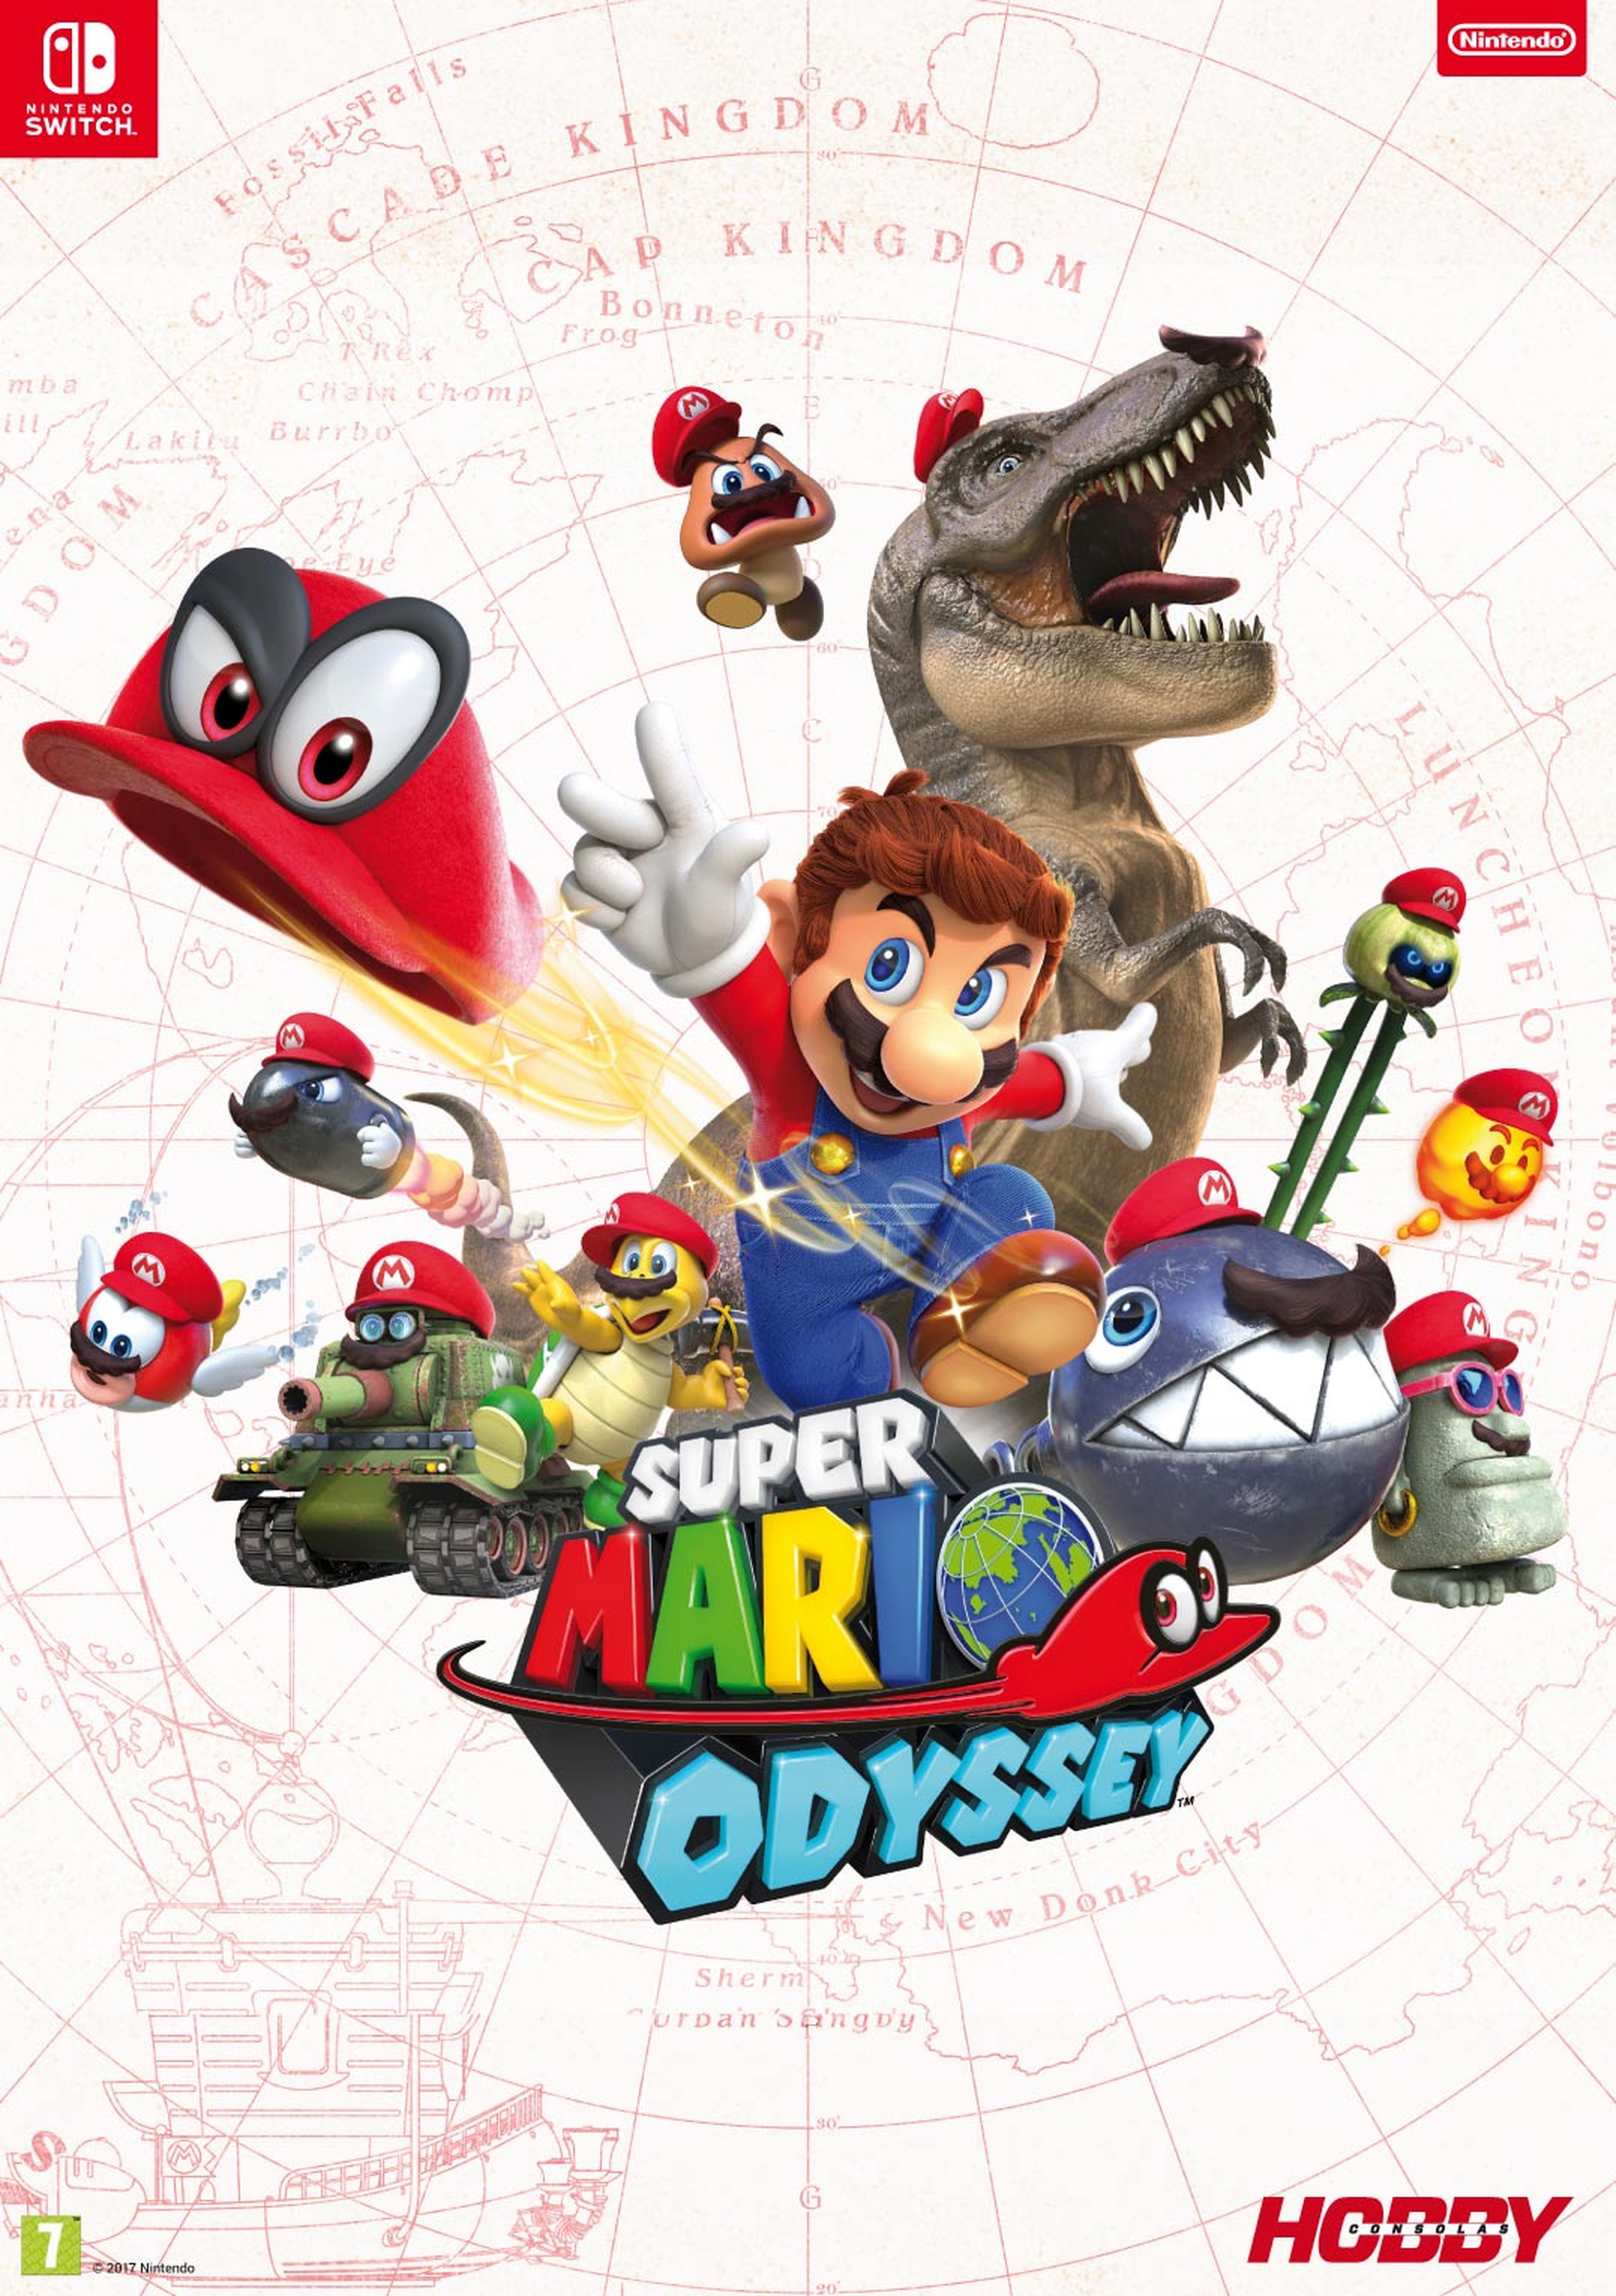 Hobby Consolas 316, a la venta: ¡Regalamos cinco Switch Edición Super Mario Odyssey y cinco juegos!